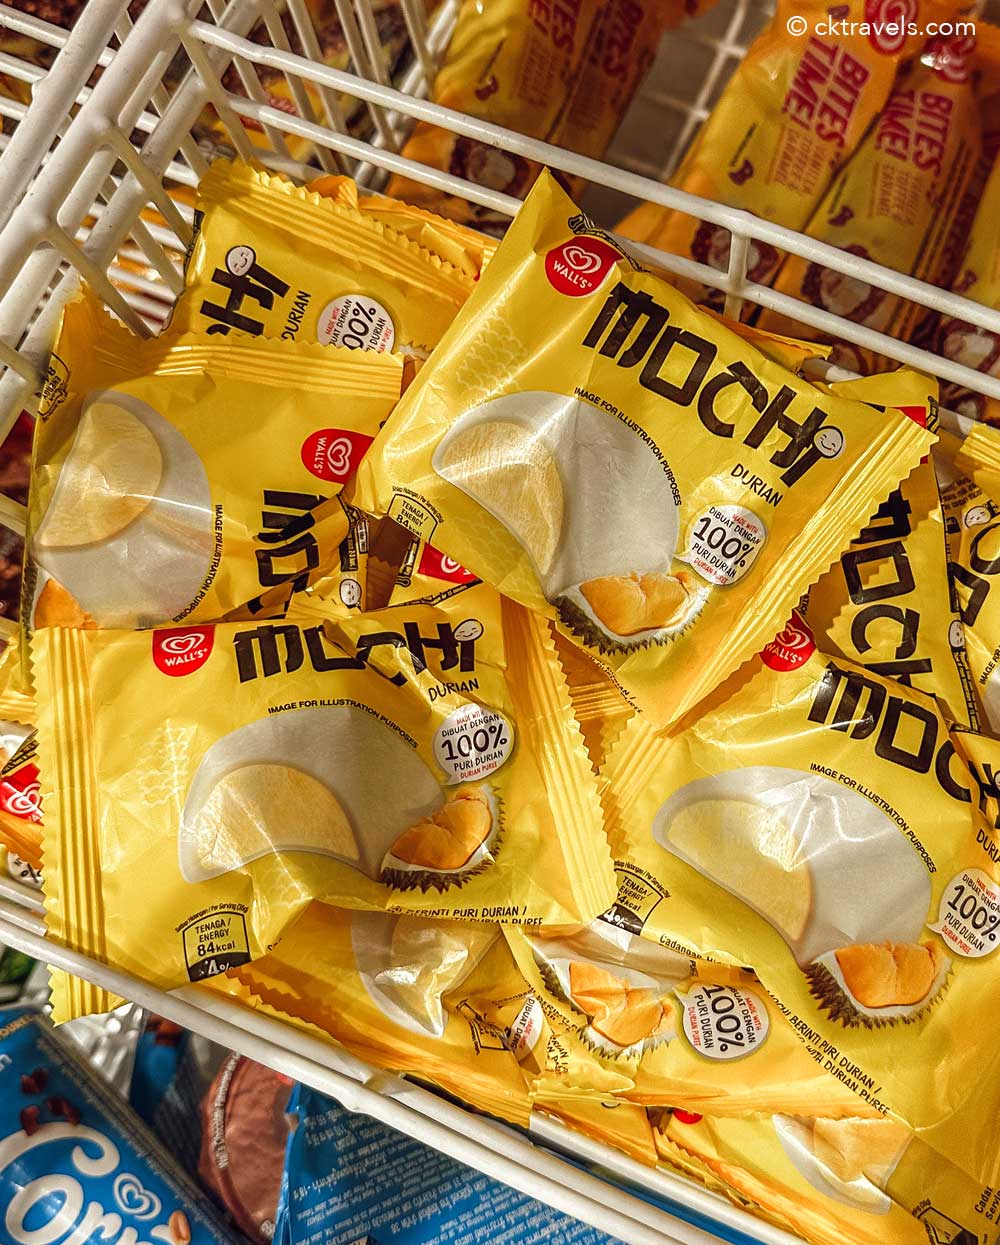 Mochi frozen durian Malaysia 7-Eleven